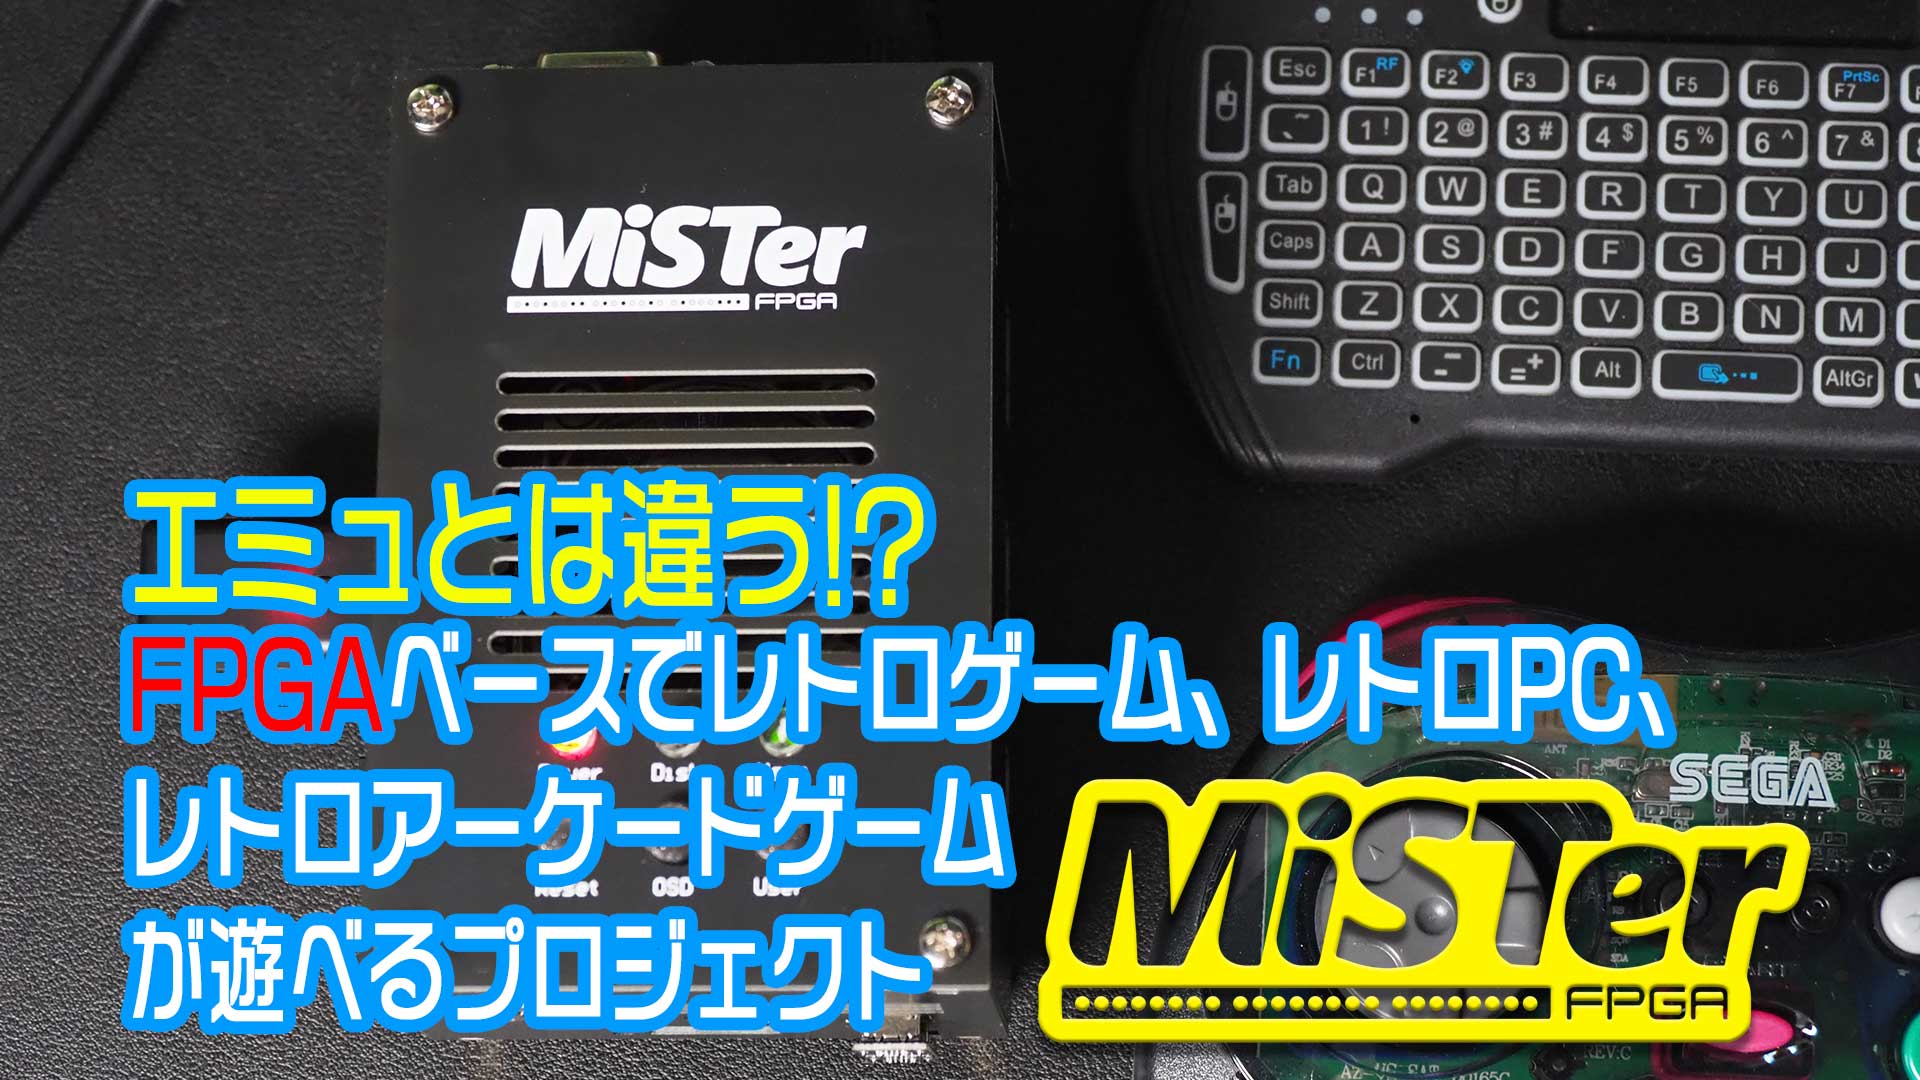 【動画コンテンツ】エミュとは違うのだよ!?　FPGAベースでレトロゲーム、レトロPC、レトロアーケードゲームを再現するプロジェクト『MiSTer』